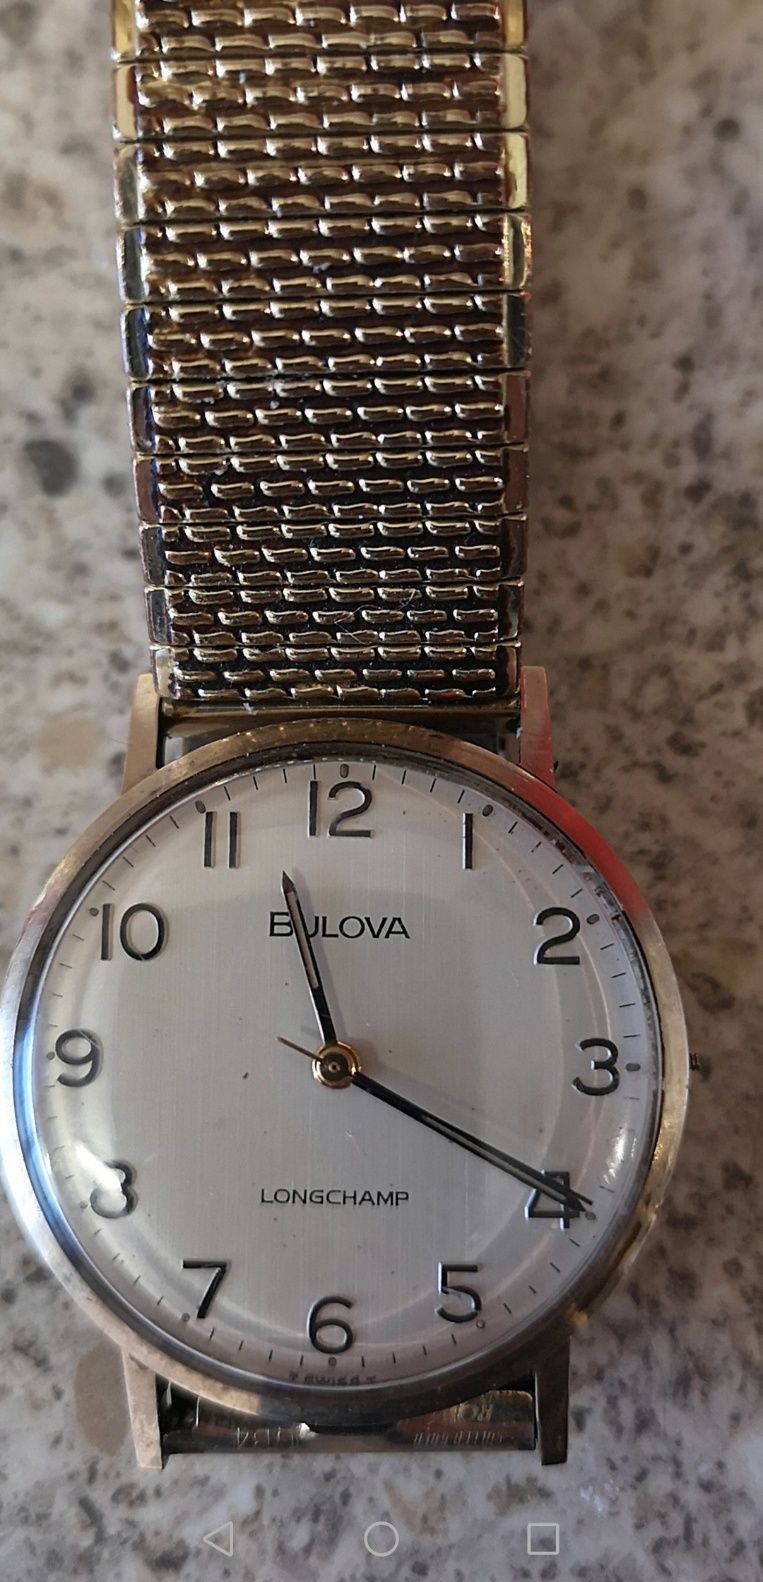 Bulova Longchamp watch